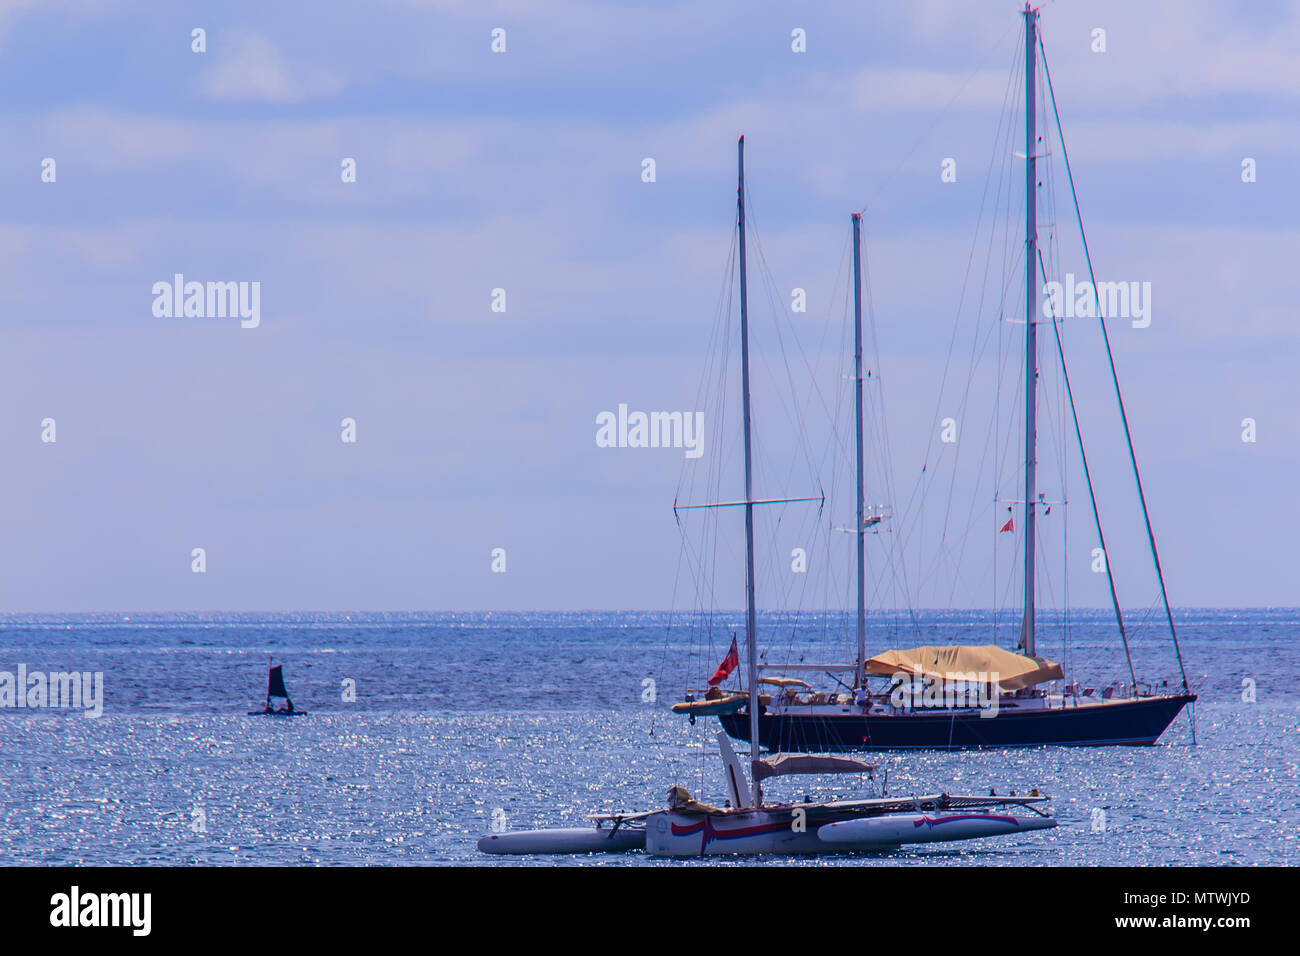 Schöne seascape Ansicht von Nai Harn Beach Phuket mit Segelyachten und Katamarane auf Hintergrund Stockfoto